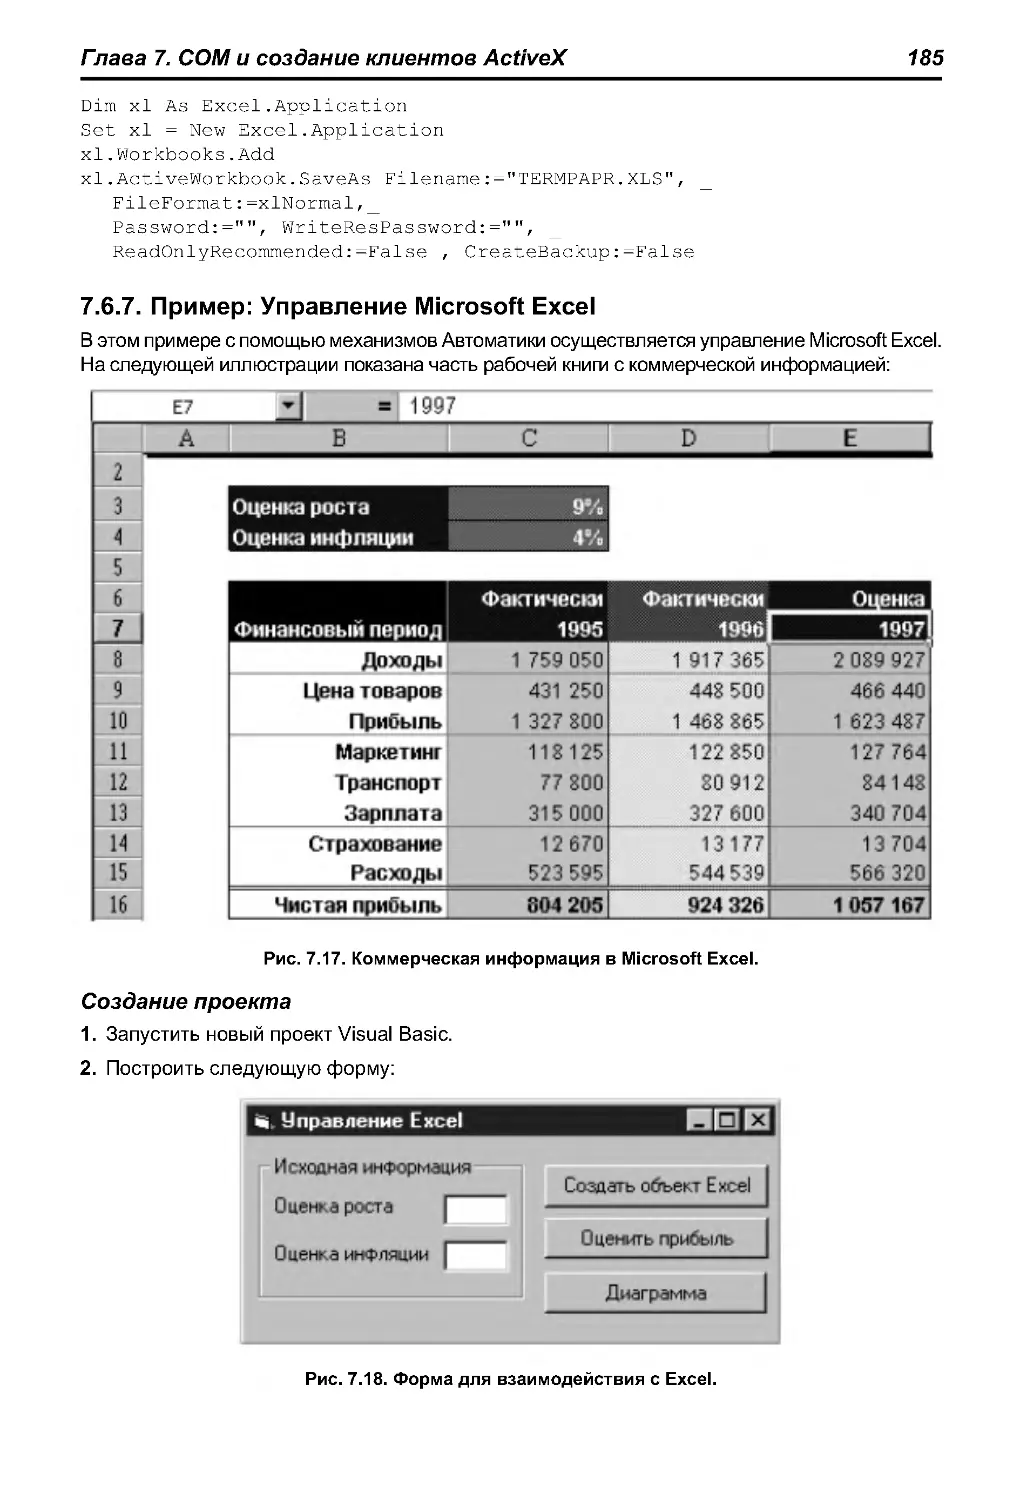 7.6.7. Пример: Управление Microsoft Excel